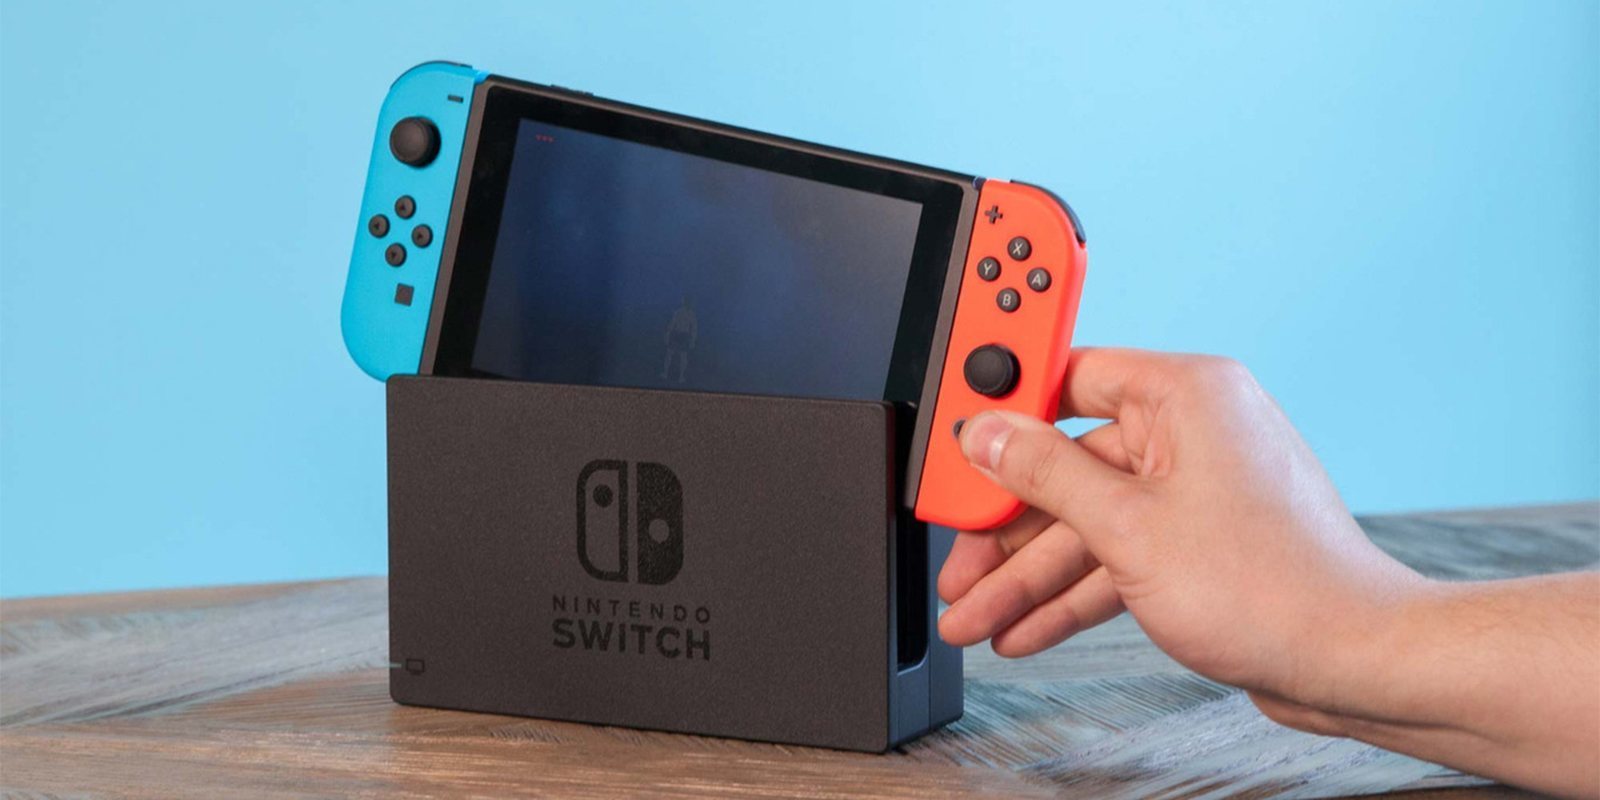 Nintendo Switch es la consola más vendida de la historia en Estados Unidos en su primer año